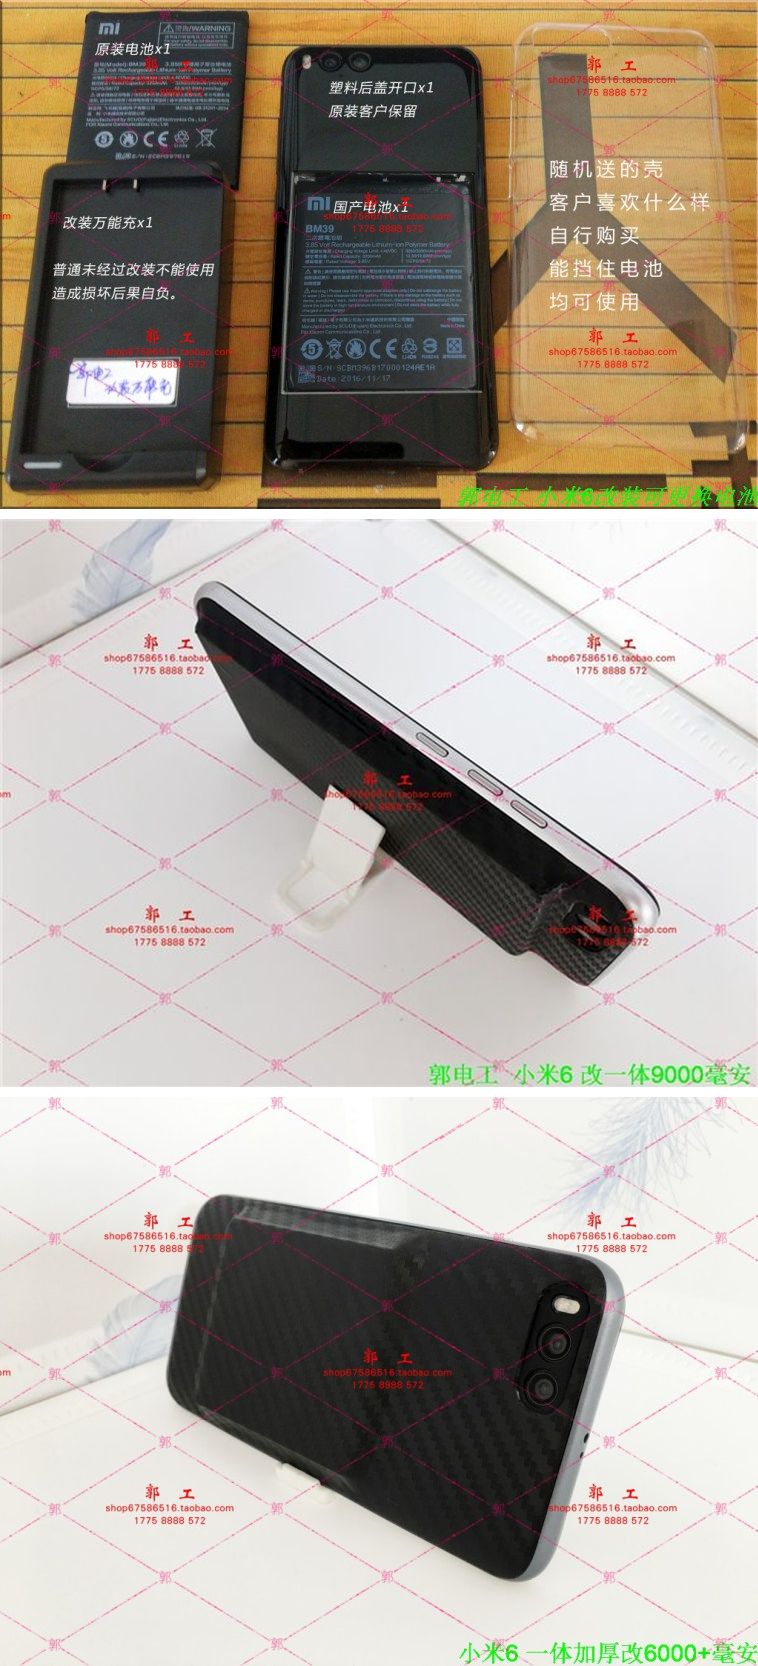 Xiaomi Mi 6 brutális akkumulátorral